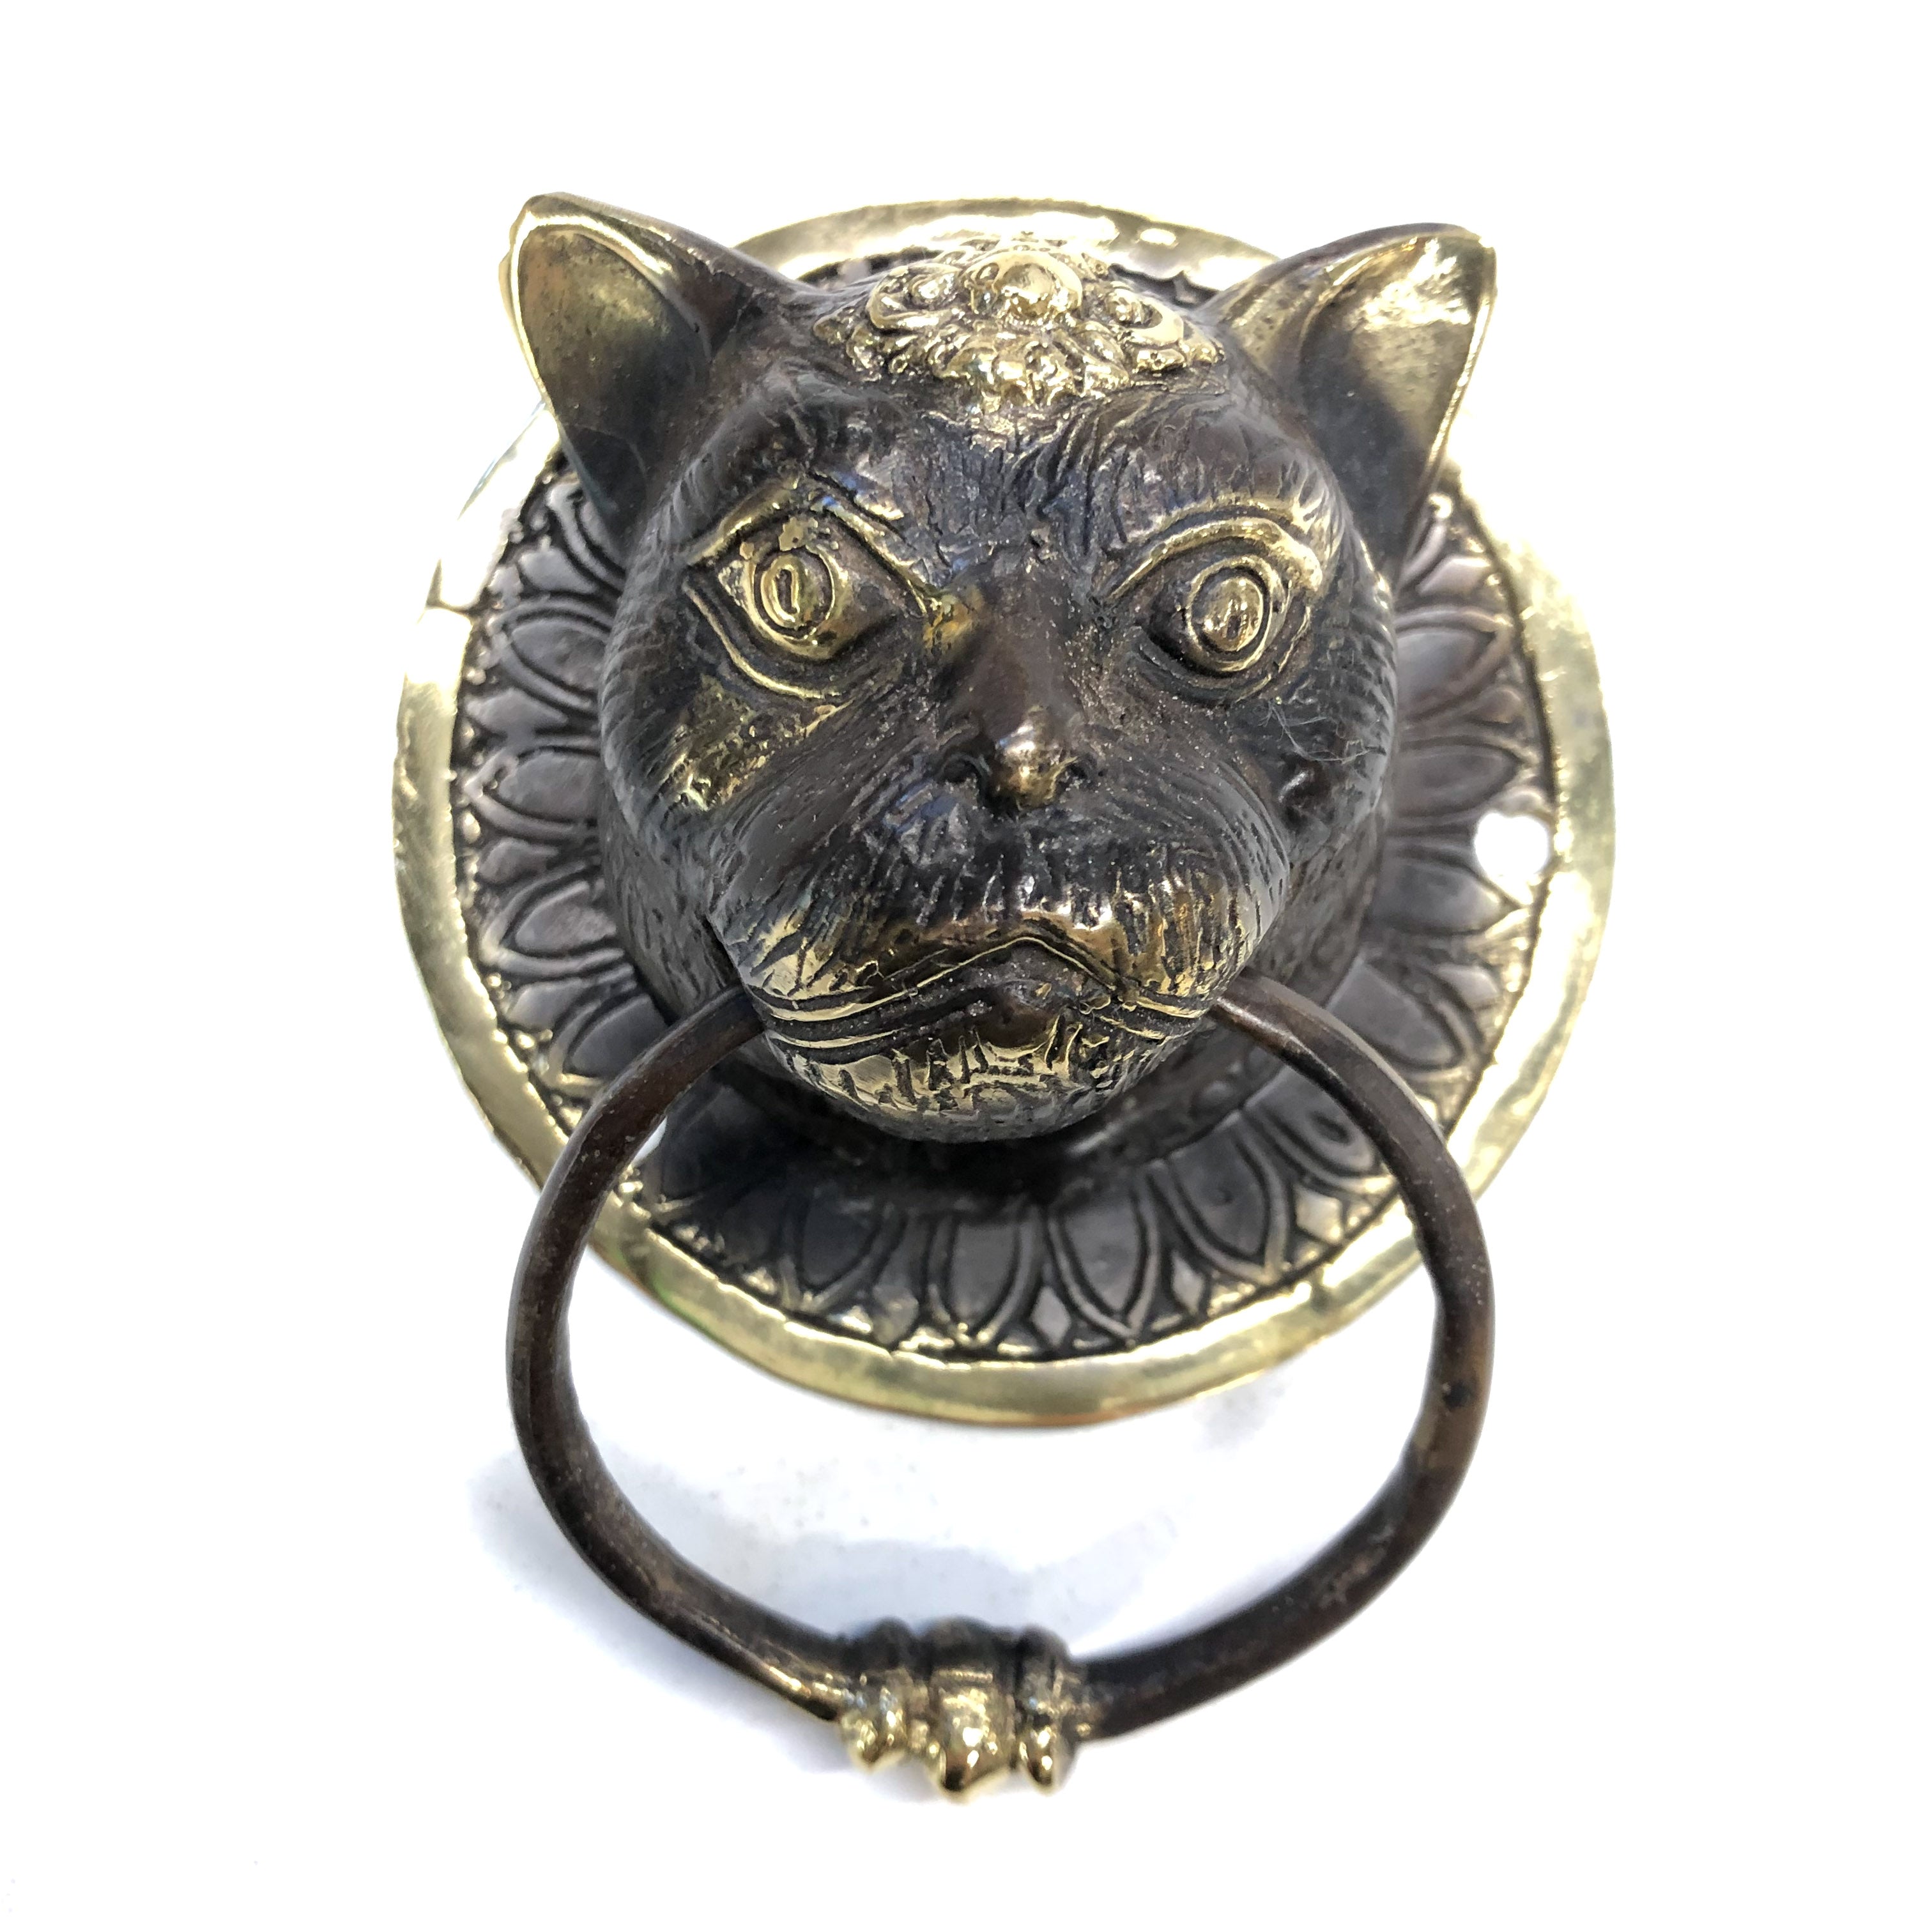 Bronze Cat Door Knocker - Hanging Catch-All, Towel Ring – Well